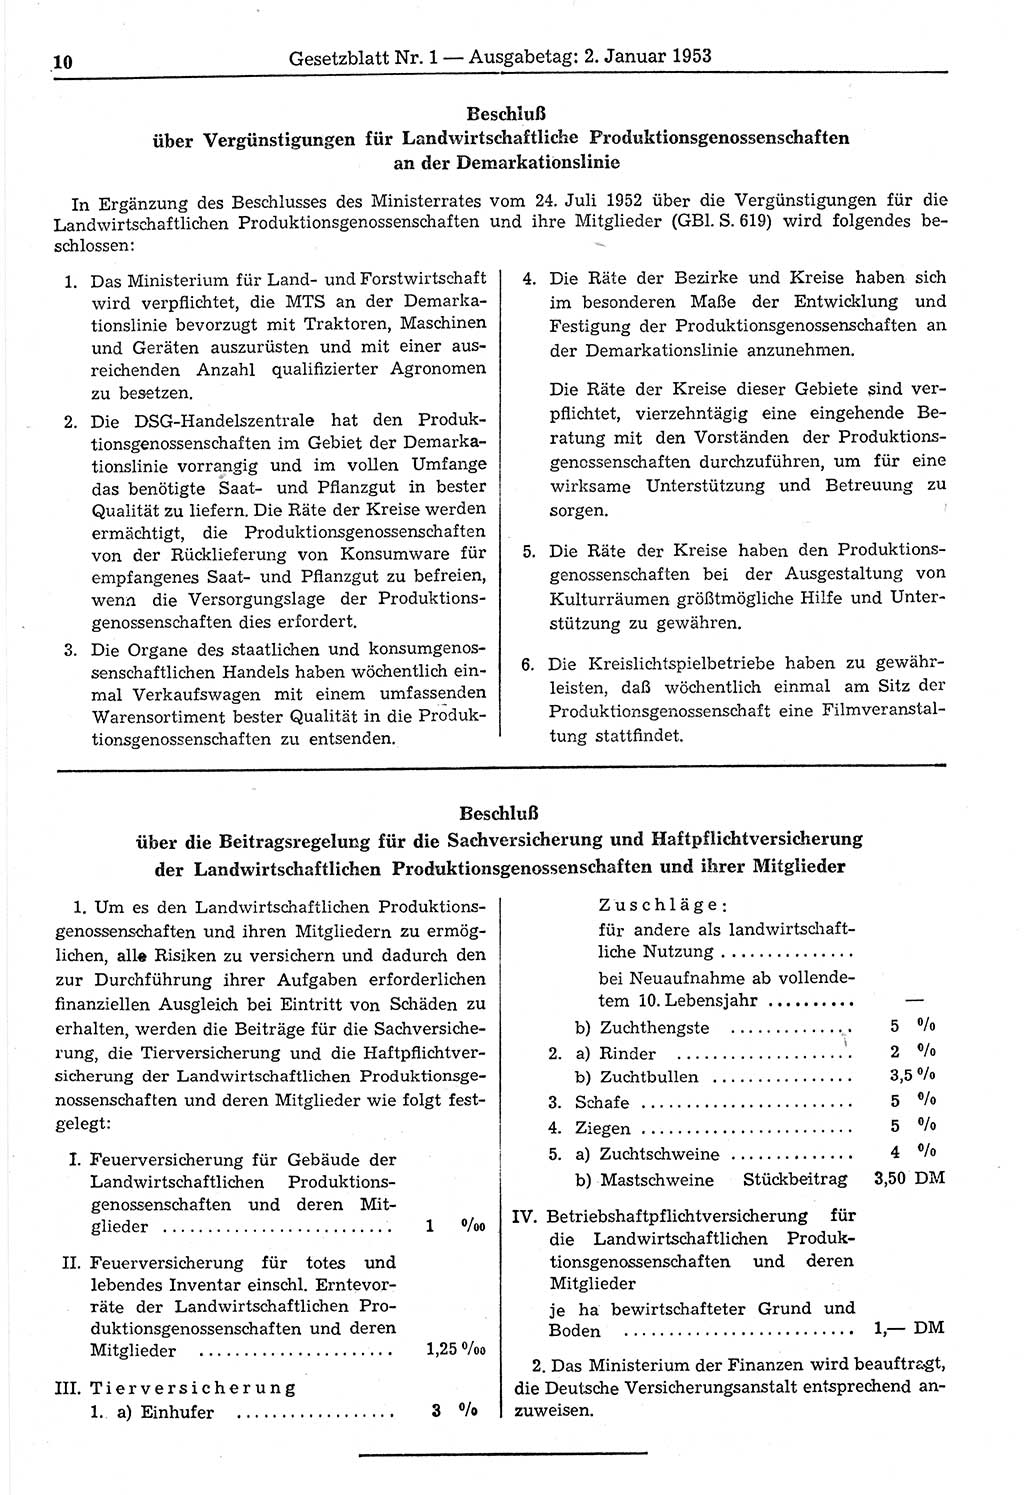 Gesetzblatt (GBl.) der Deutschen Demokratischen Republik (DDR) 1953, Seite 10 (GBl. DDR 1953, S. 10)